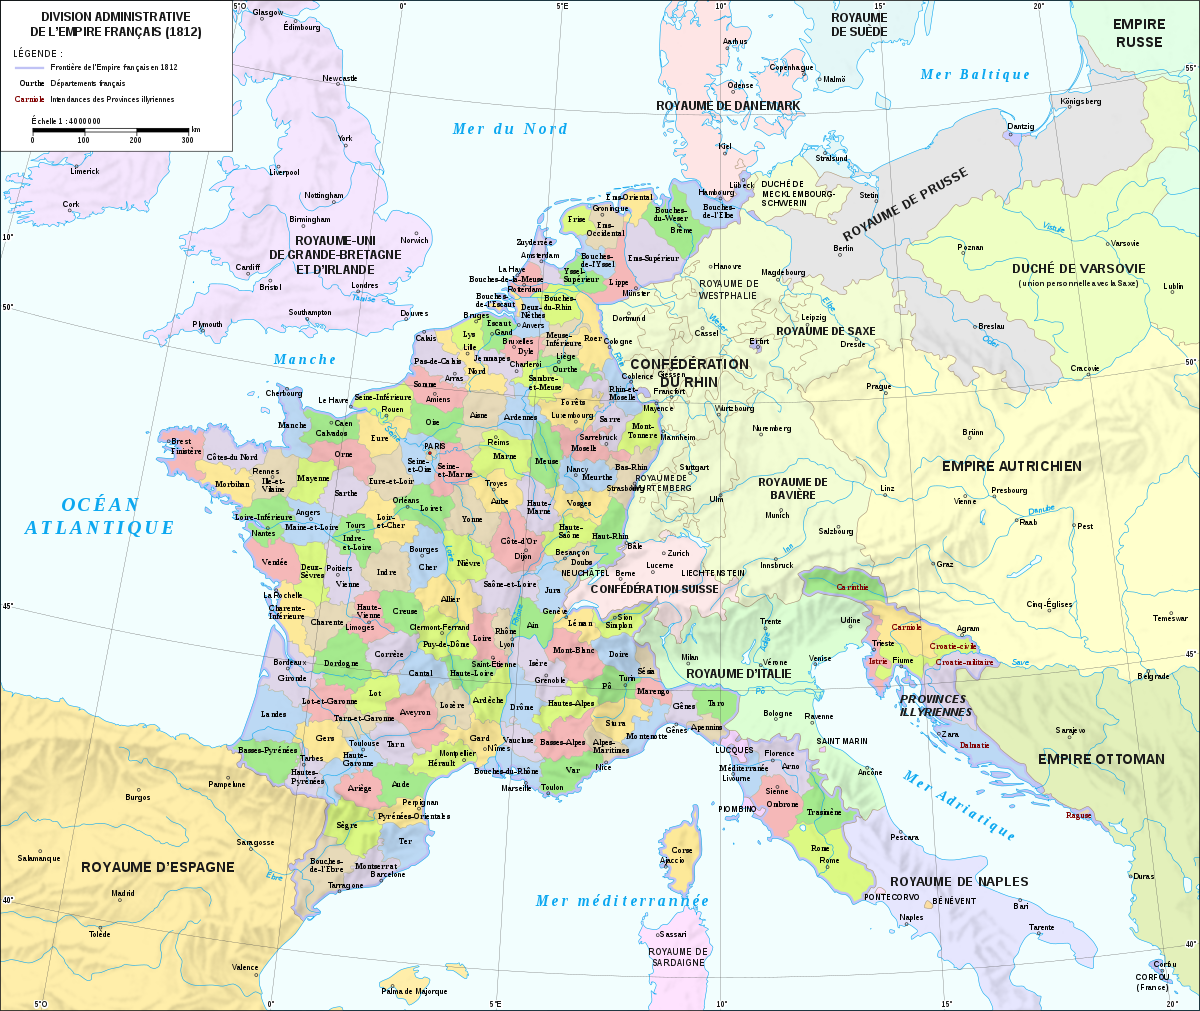 Quel est le département le plus boisé de France?